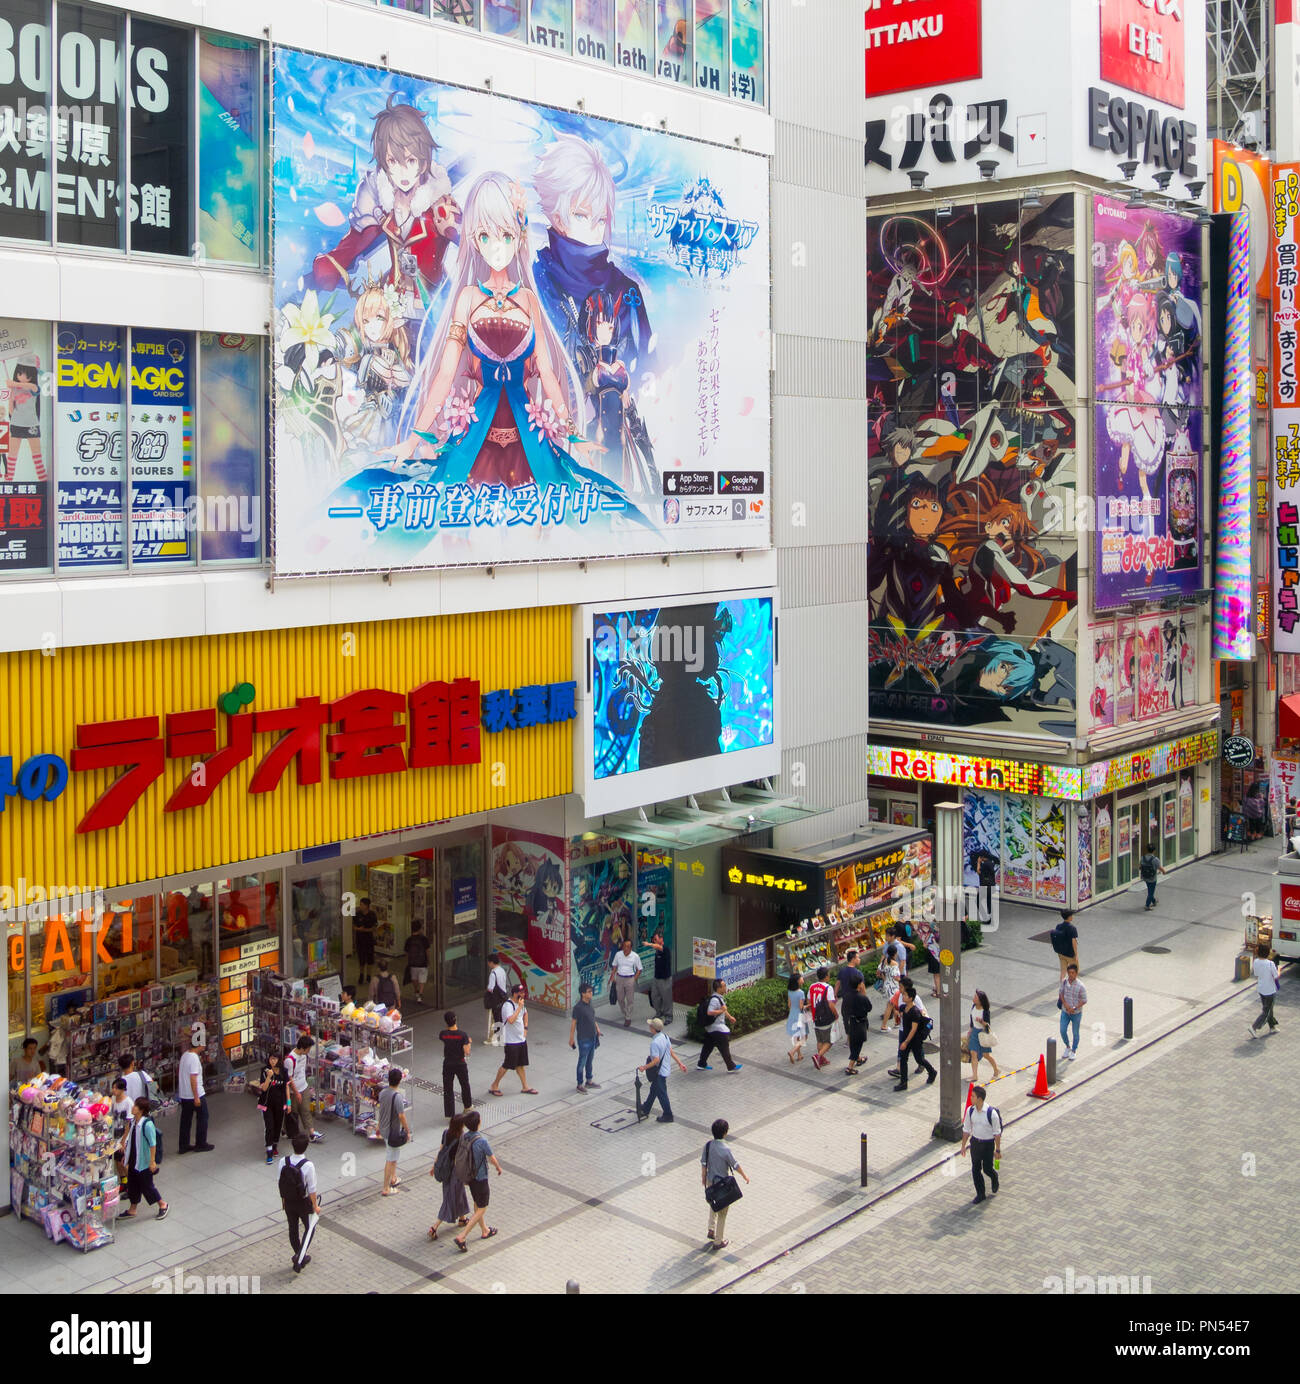 Vue de touristes, anime les librairies et signes dans le quartier Akihabara de Tokyo, Japon. Banque D'Images